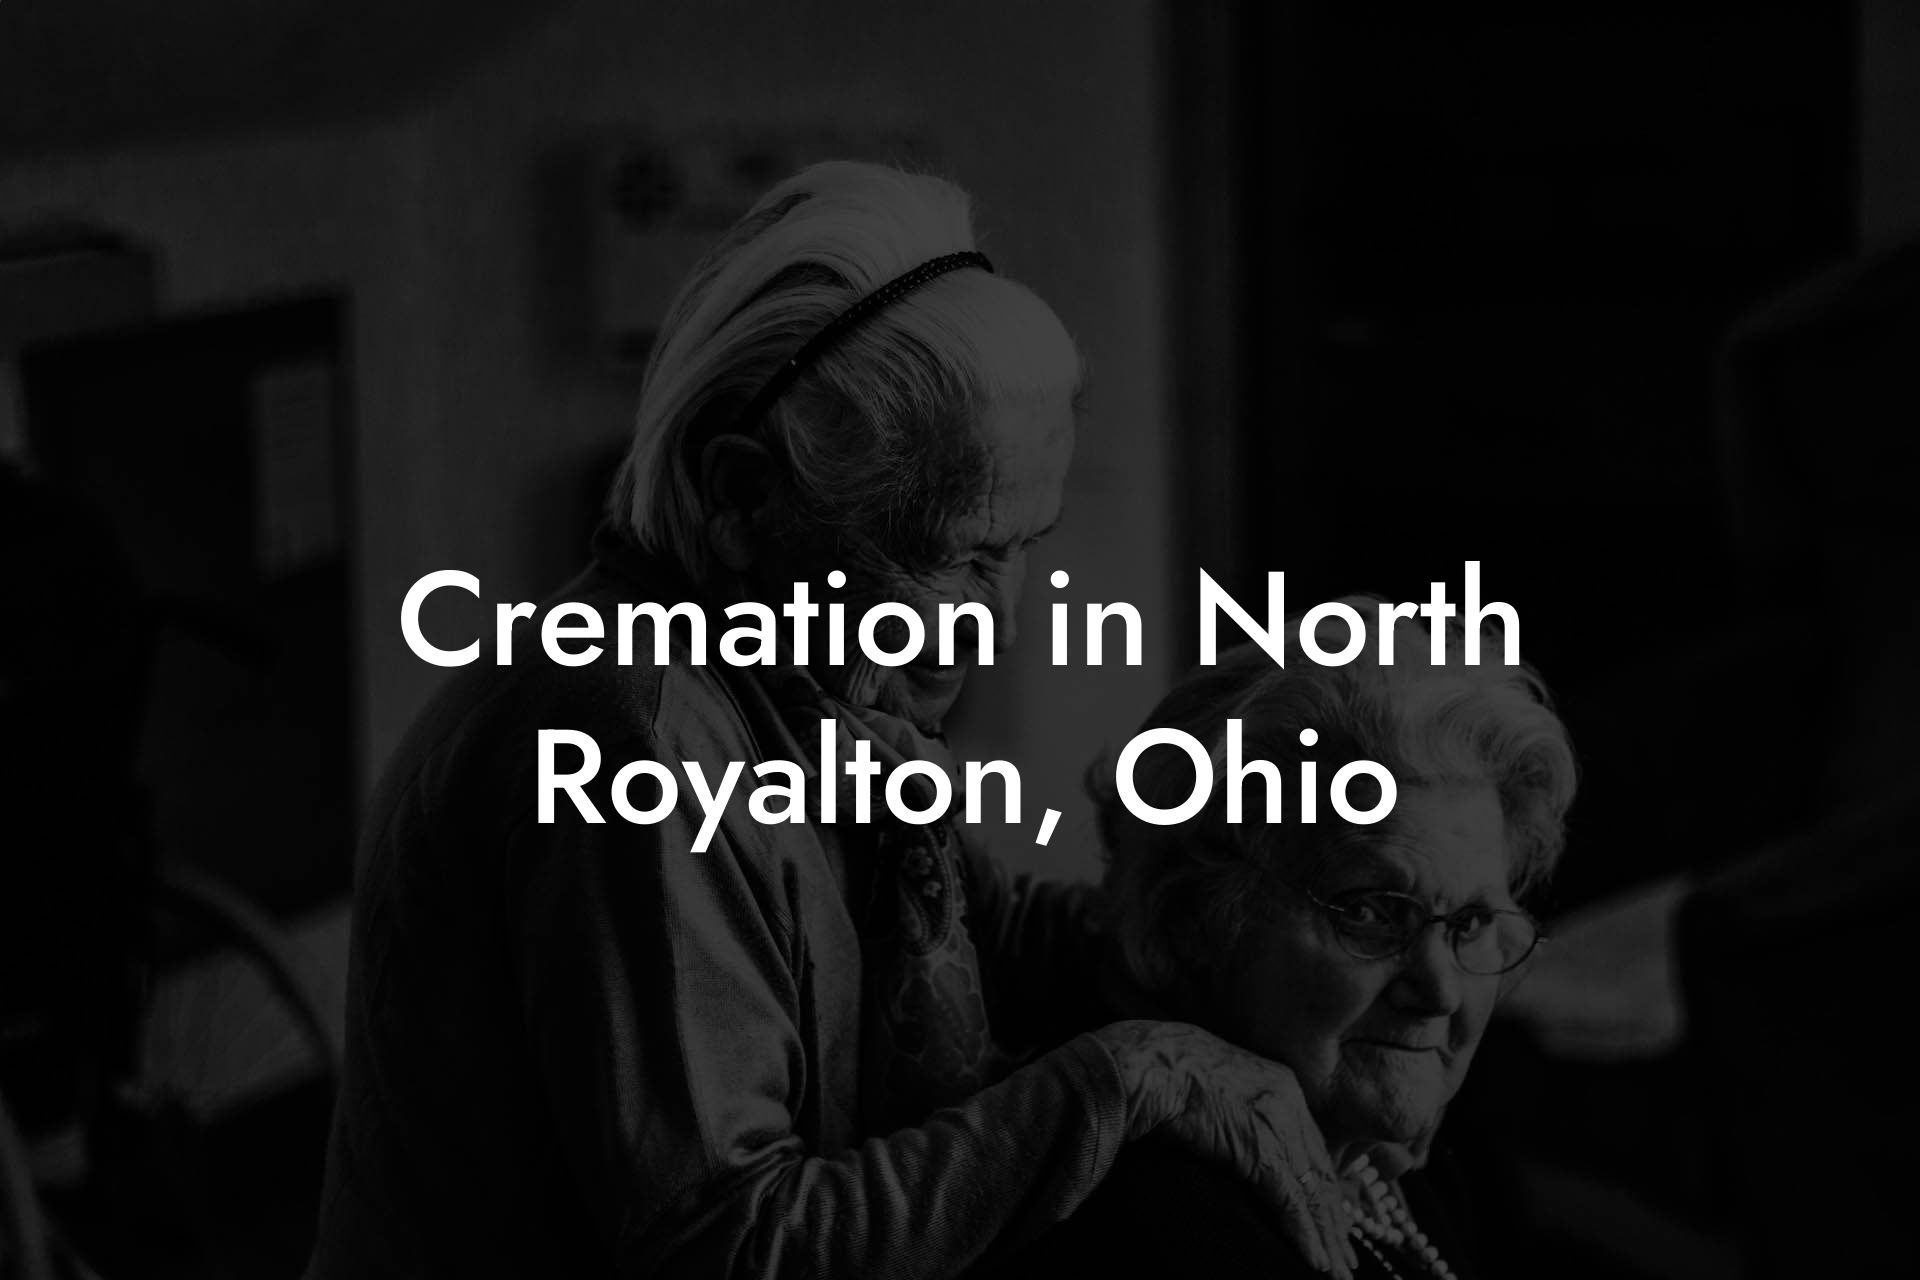 Cremation in North Royalton, Ohio